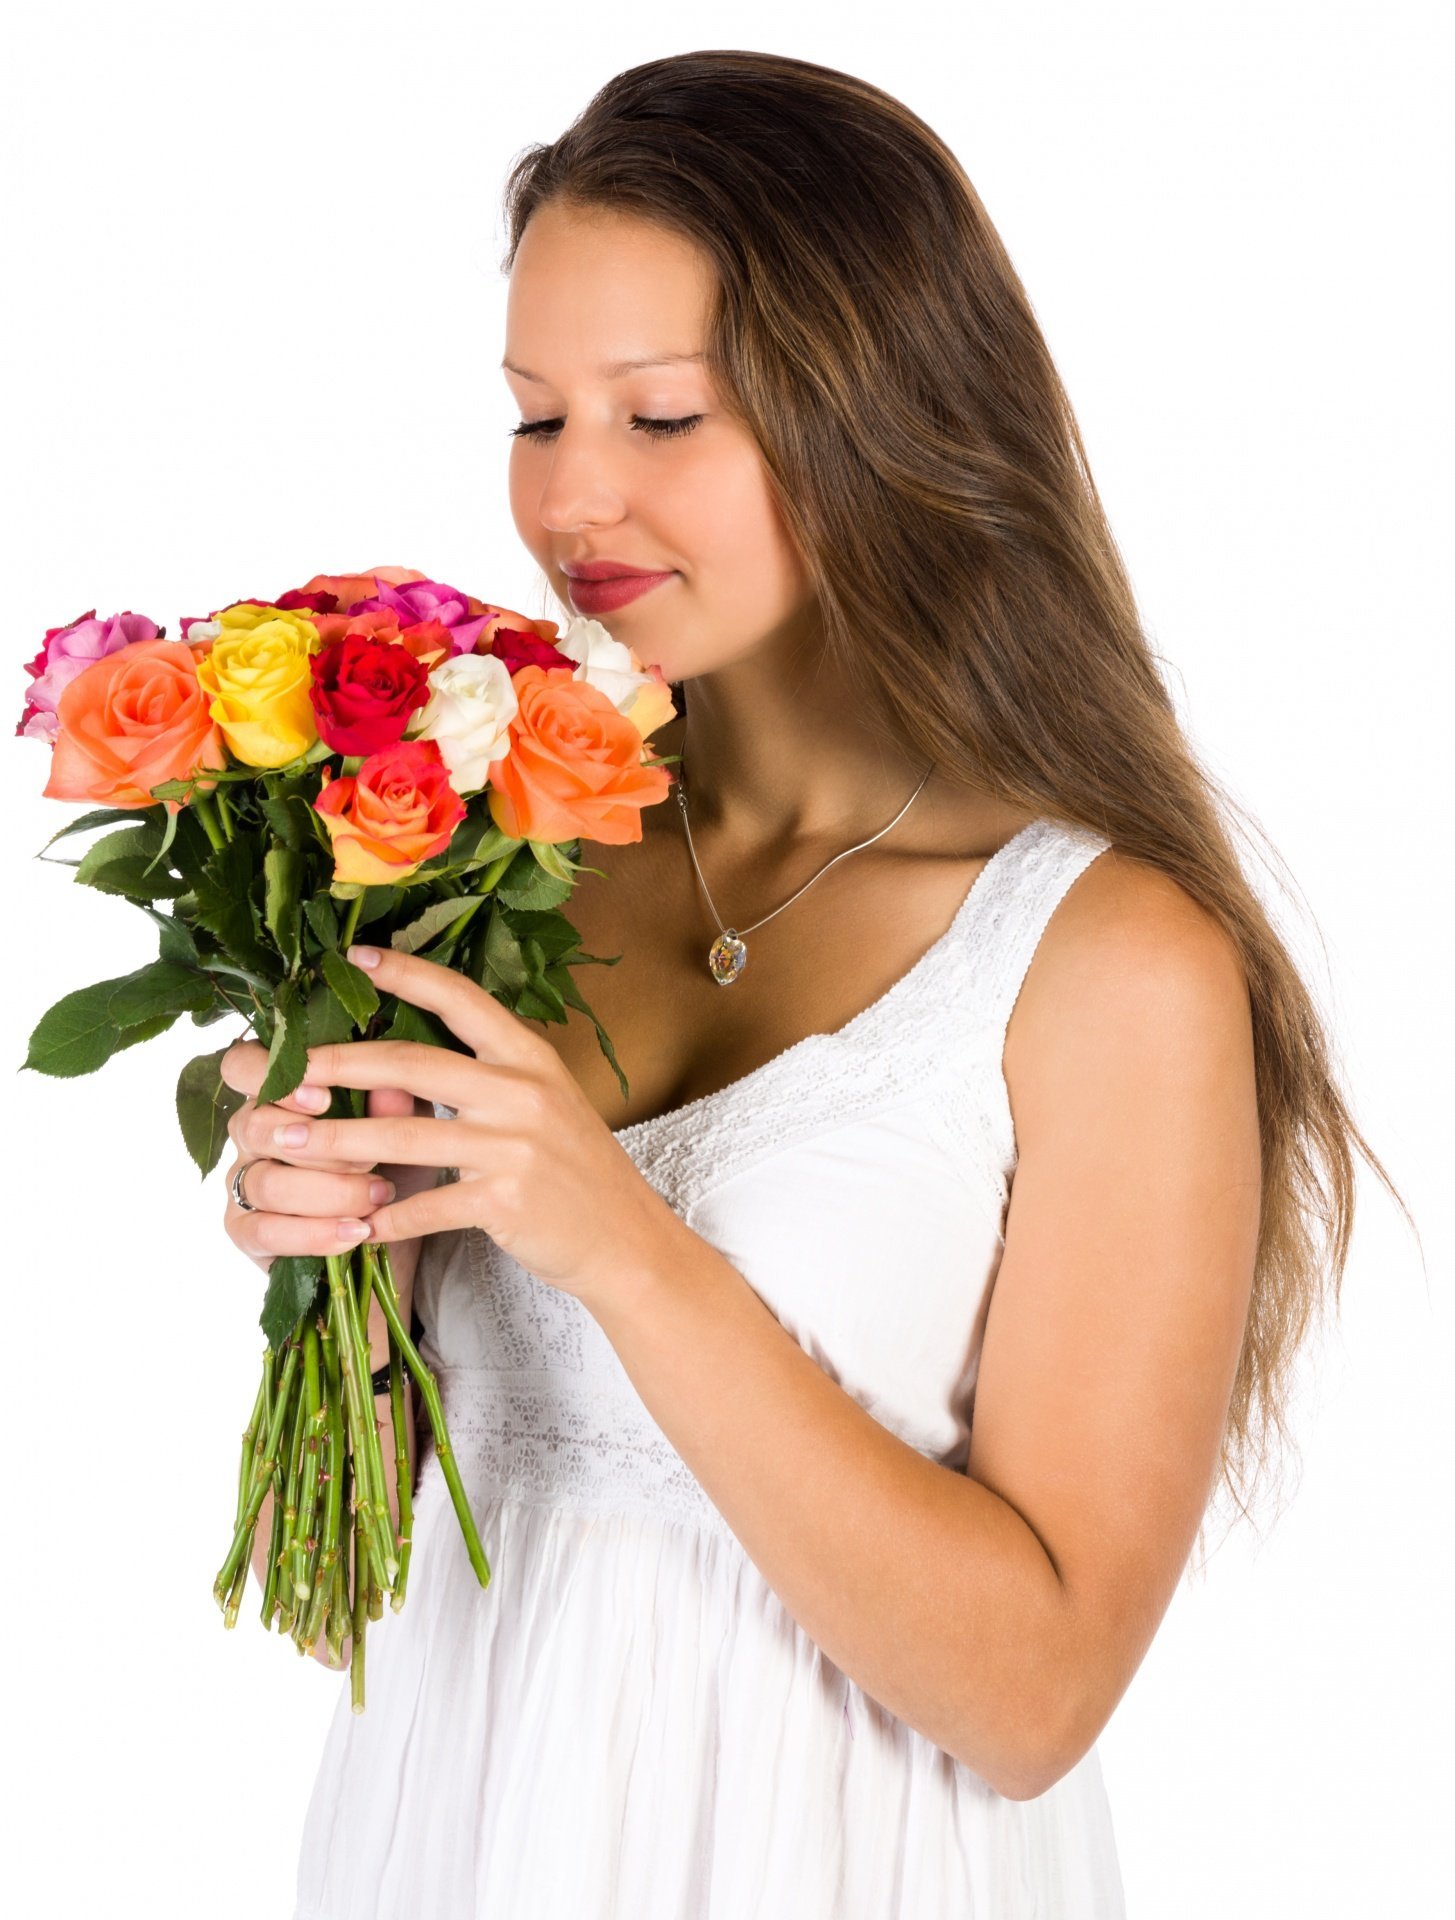 Слушать девушкам дарят цветы. Букет "девушке". Букет цветов для женщины. Девушка с цветами. Букет в руках у женщины.